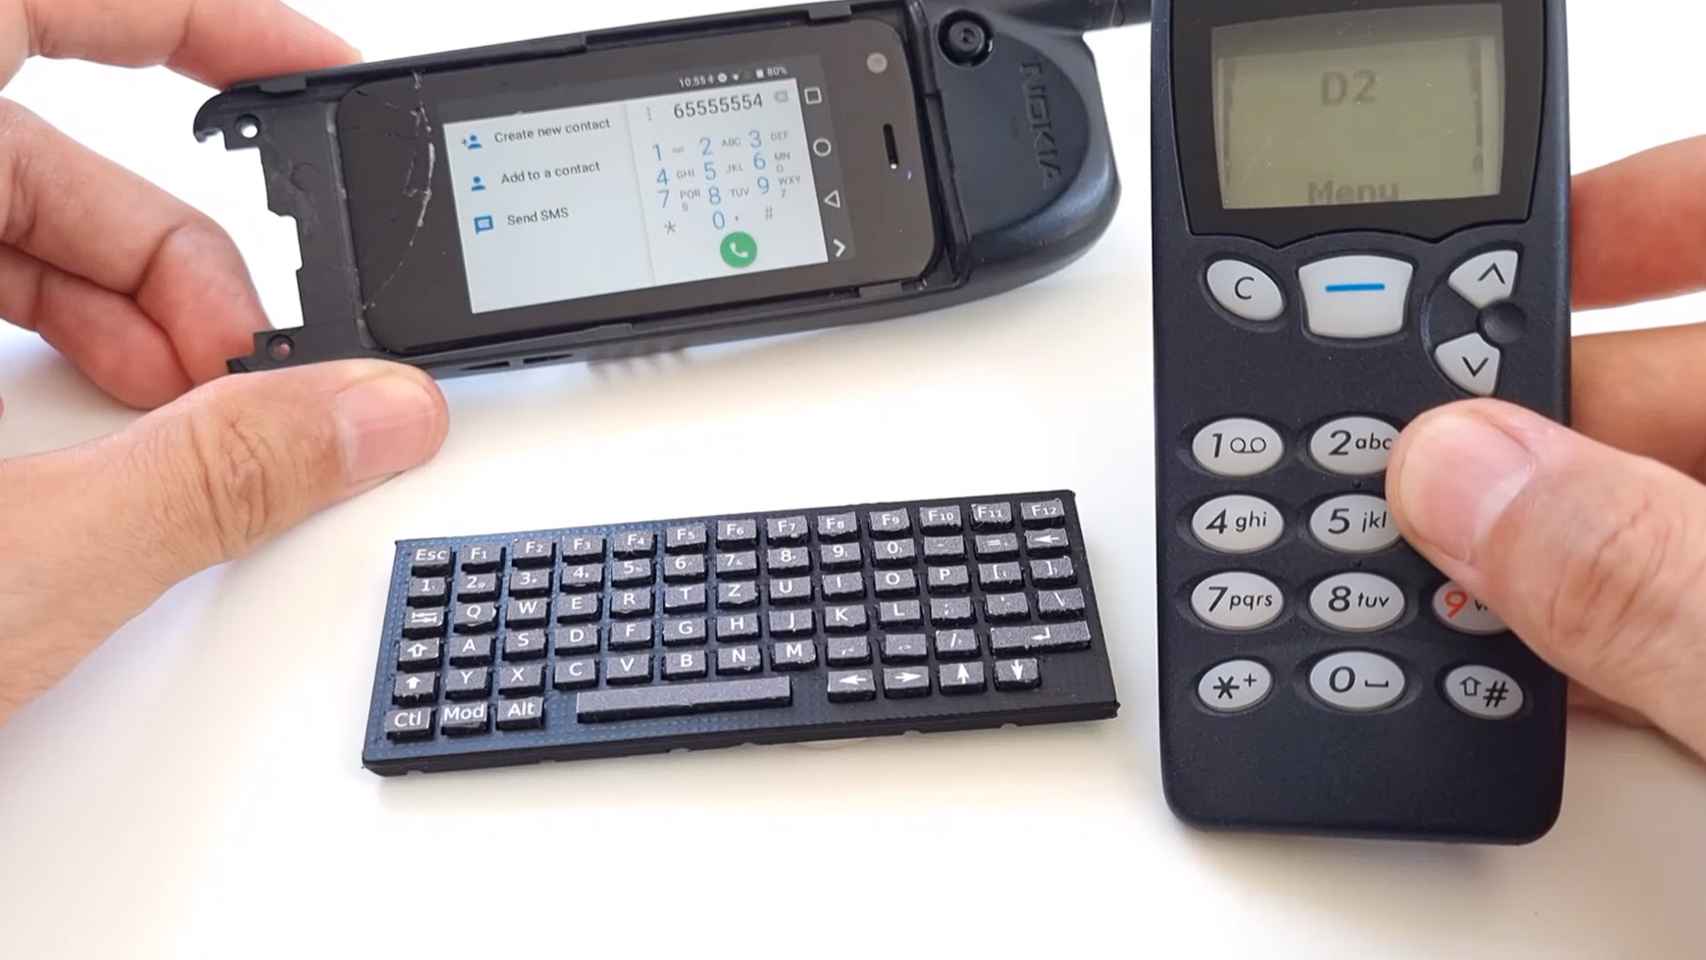 Este Nokia 5110 es en realidad un móvil Android con teclado